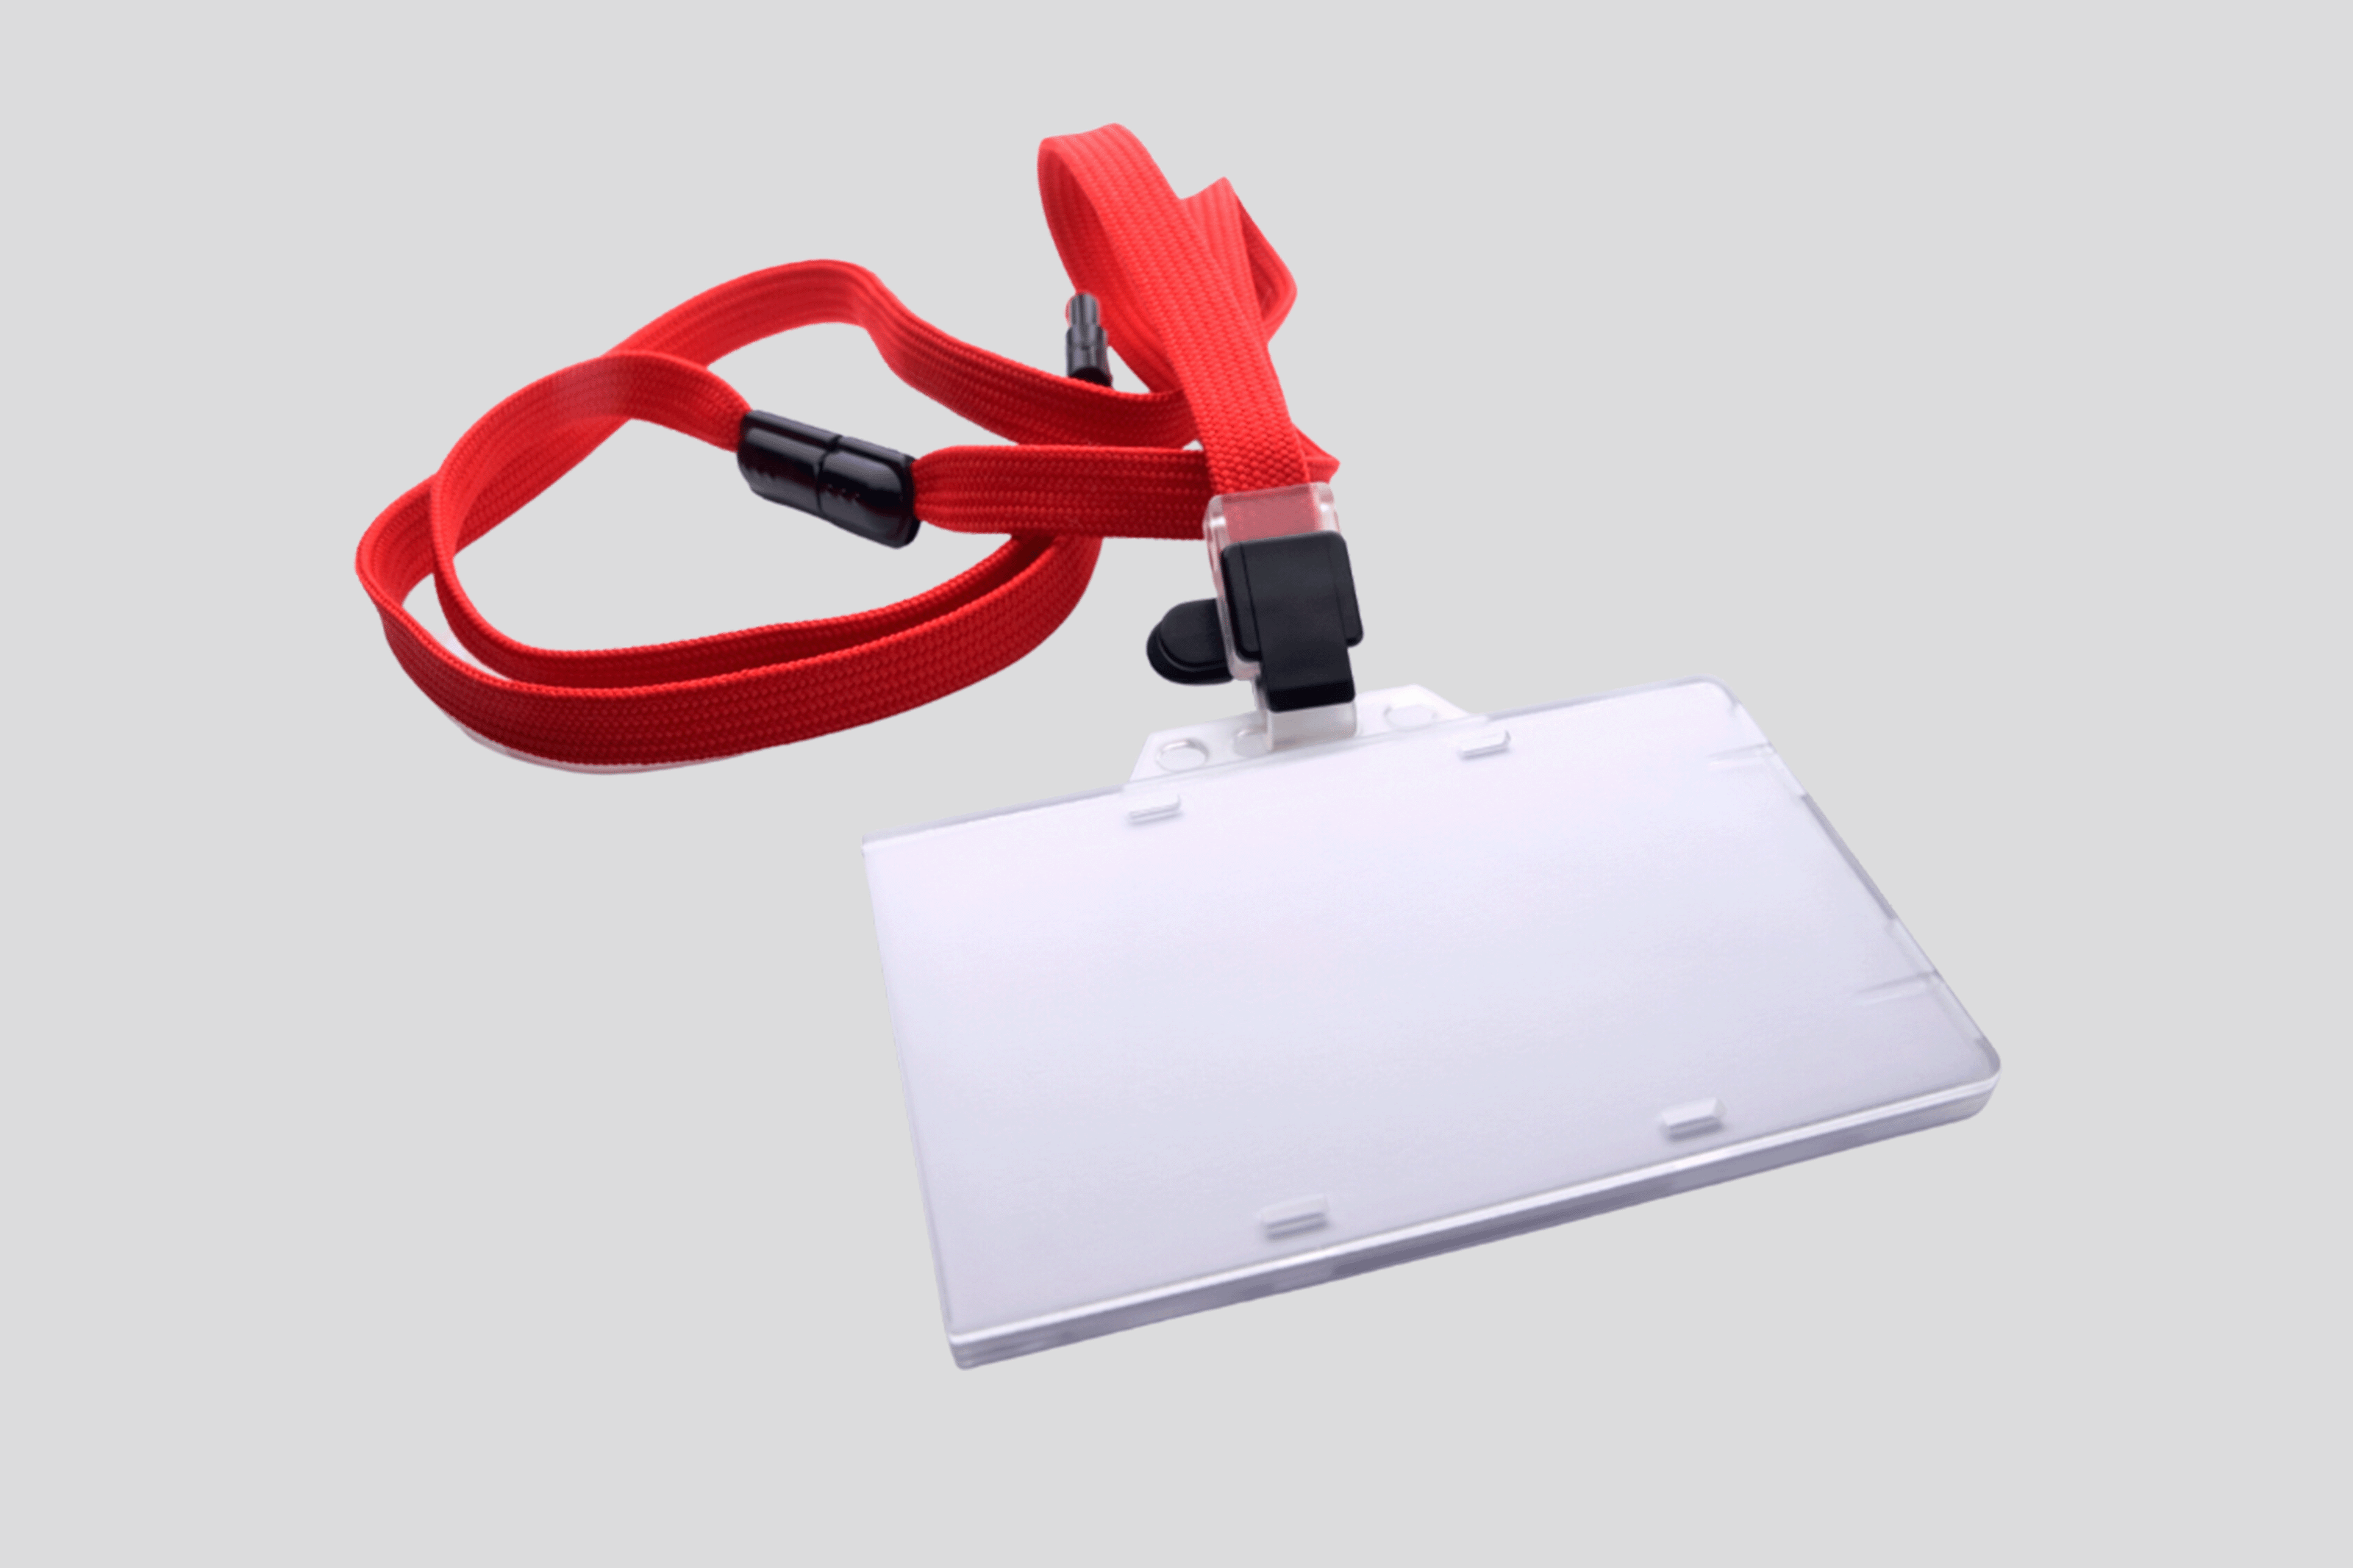 En hård PVC-korthållare med en röd snodd fäst vid den.